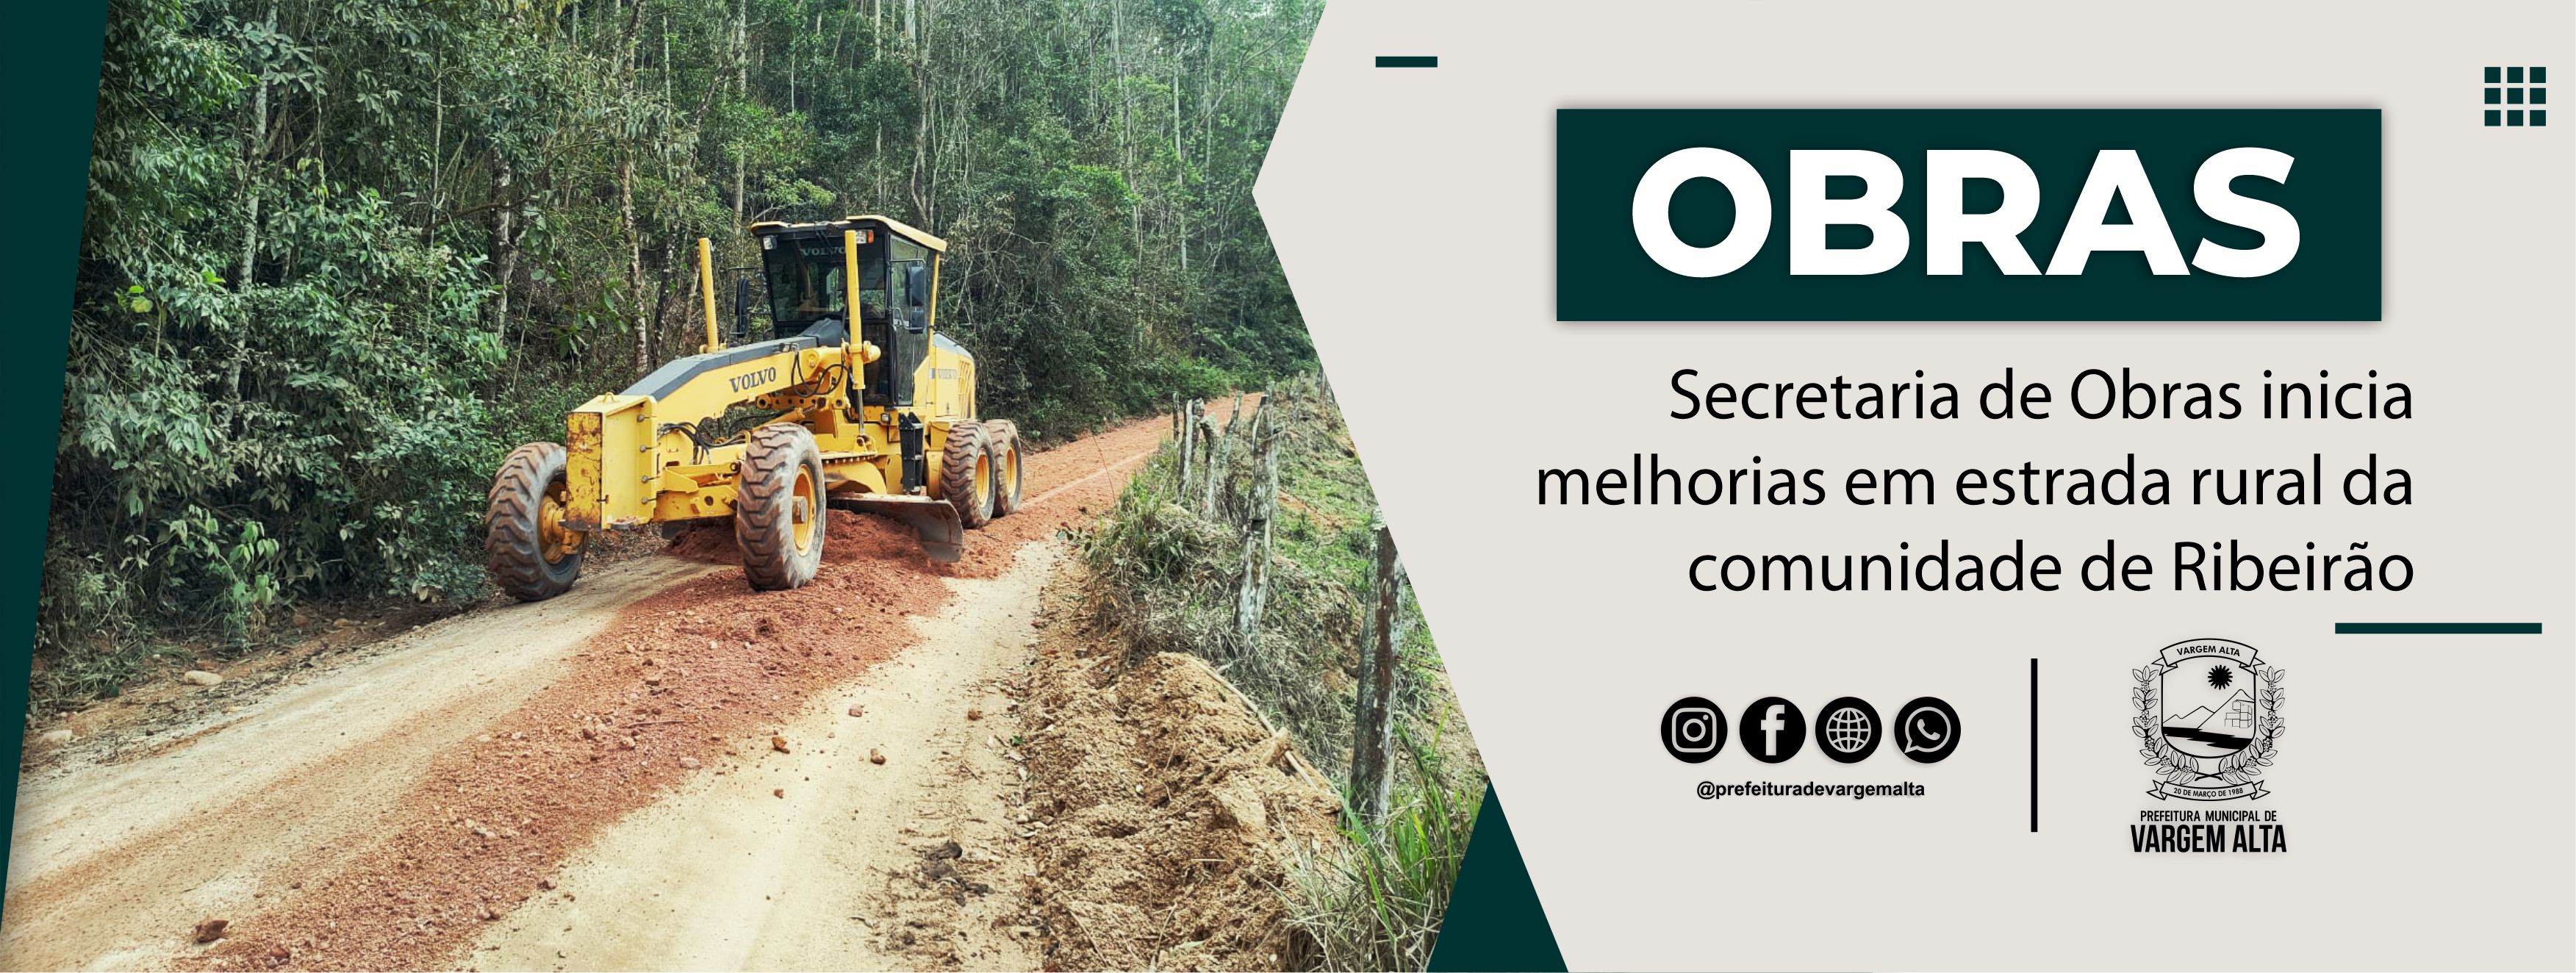 Secretaria de Obras realiza melhorias em estrada da comunidade de Ribeirão